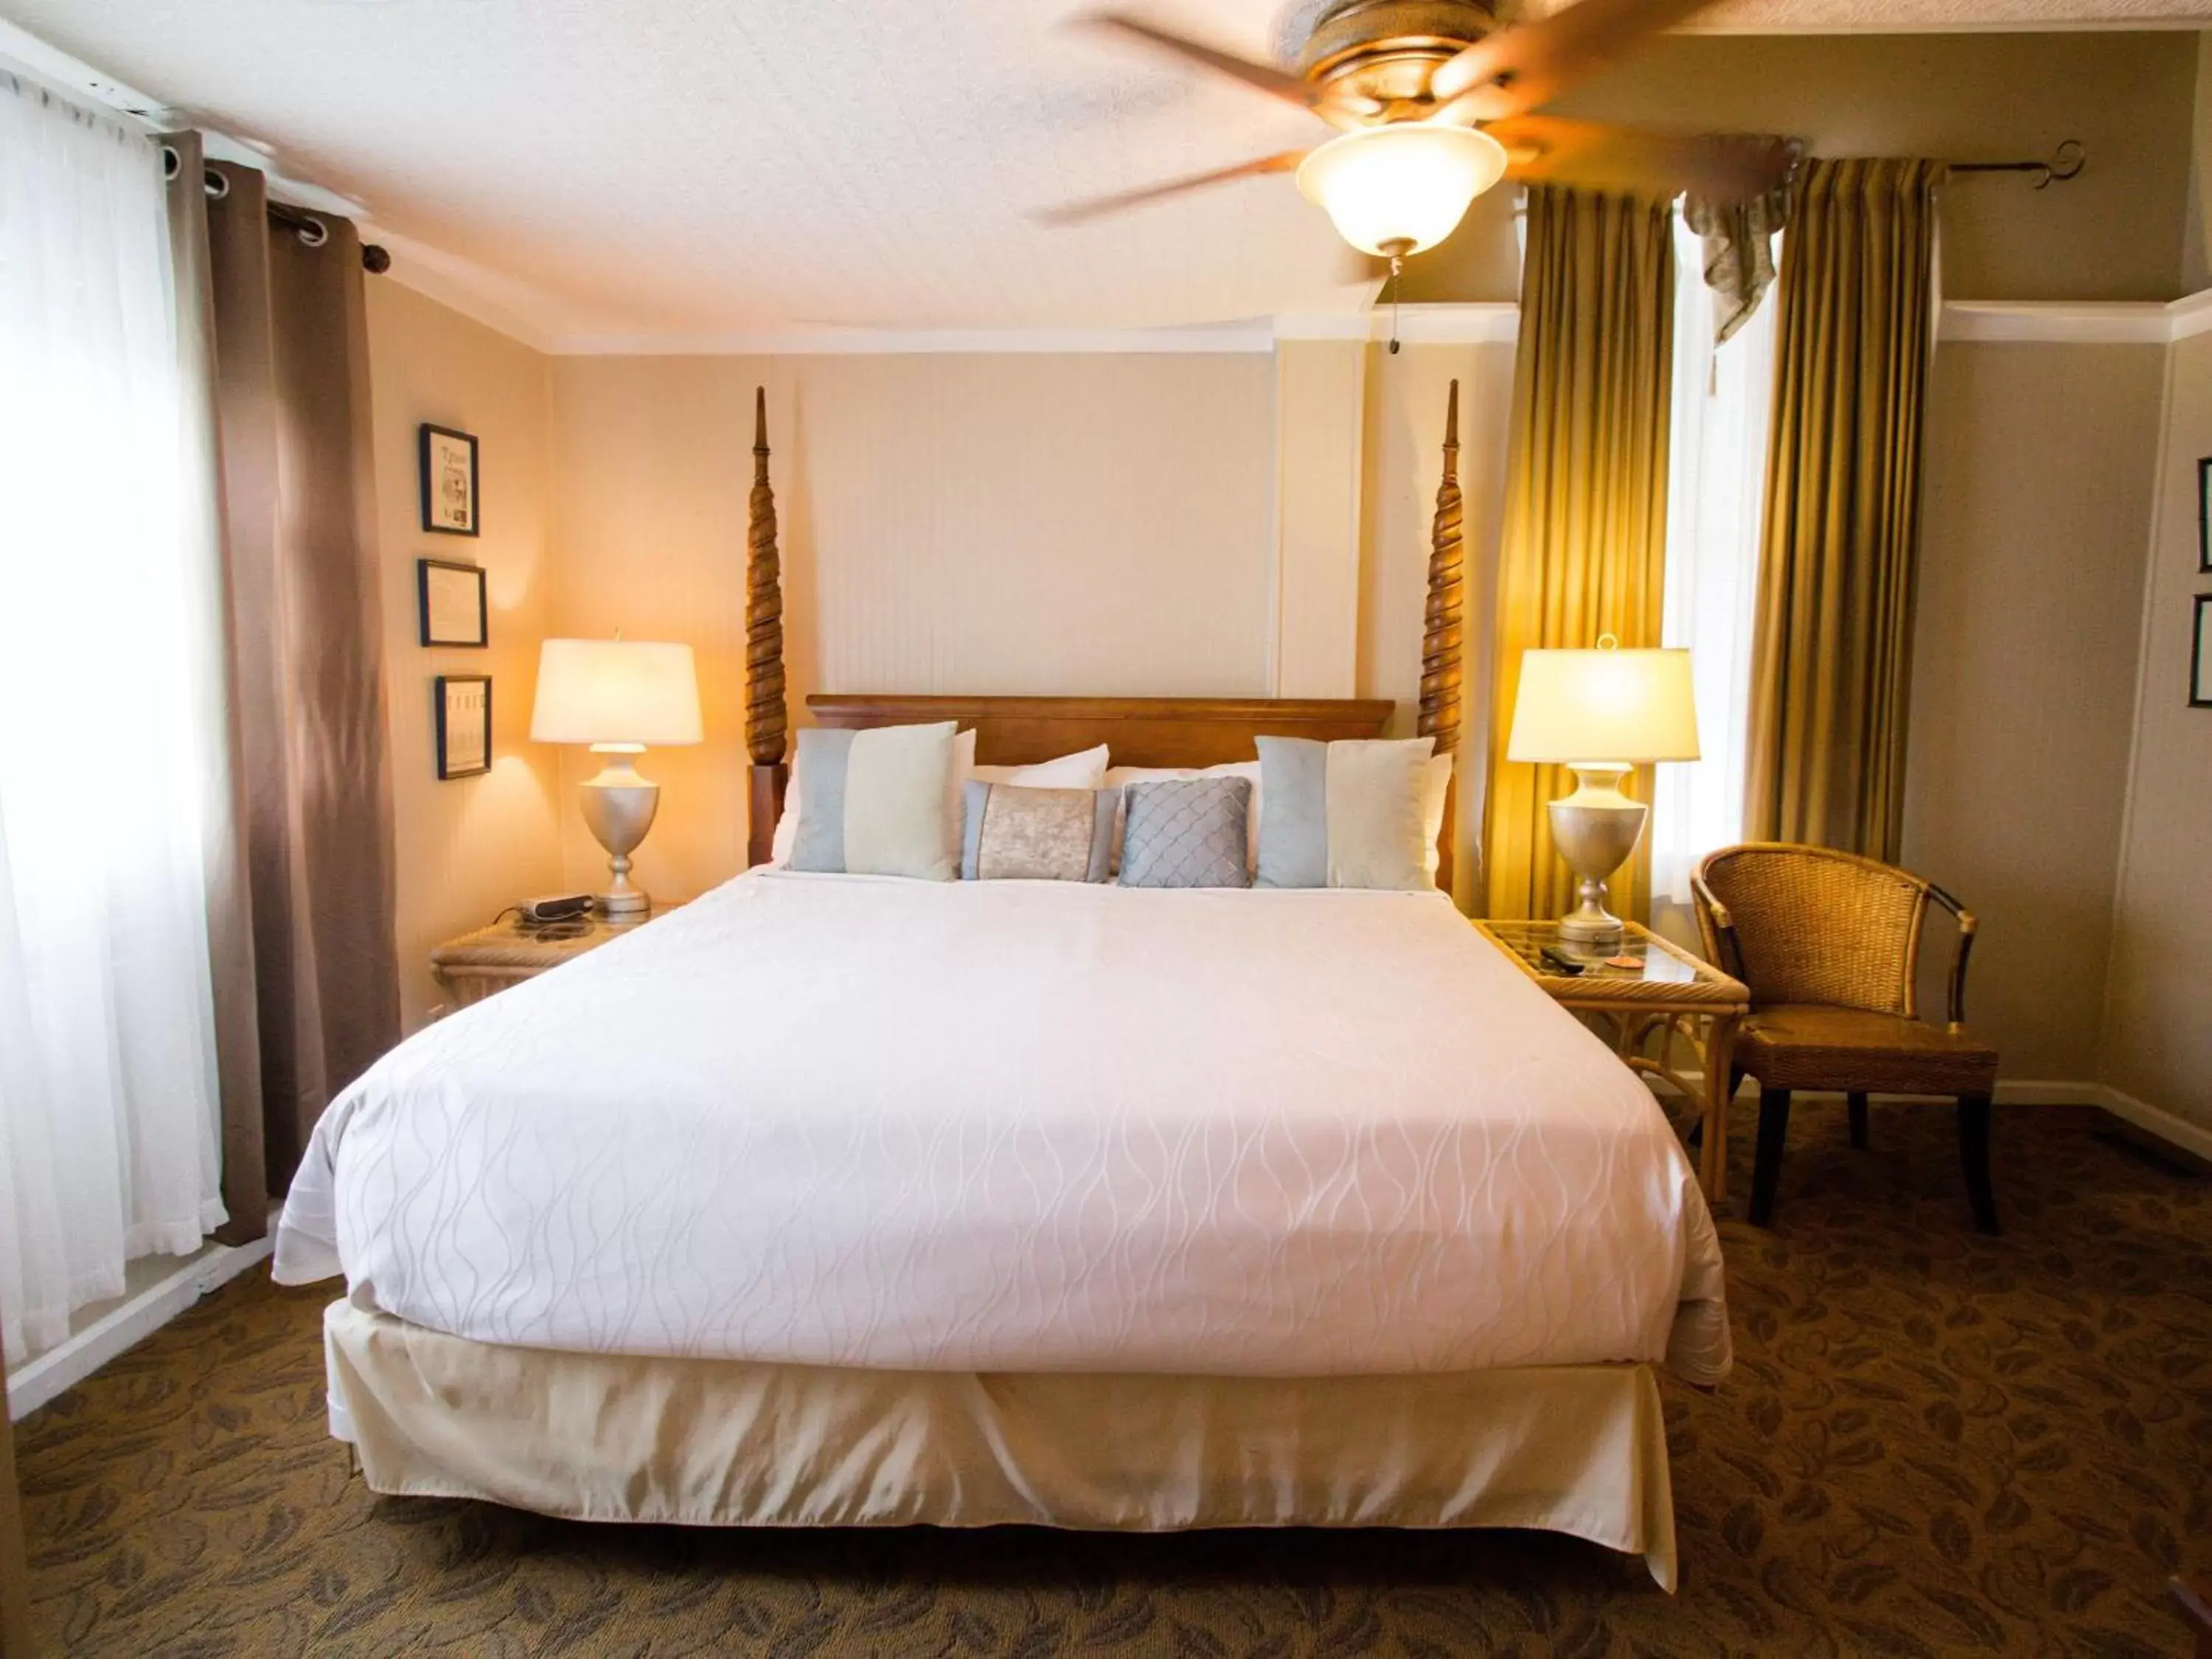 Bedroom, Bed in Tybee Island Inn Bed & Breakfast